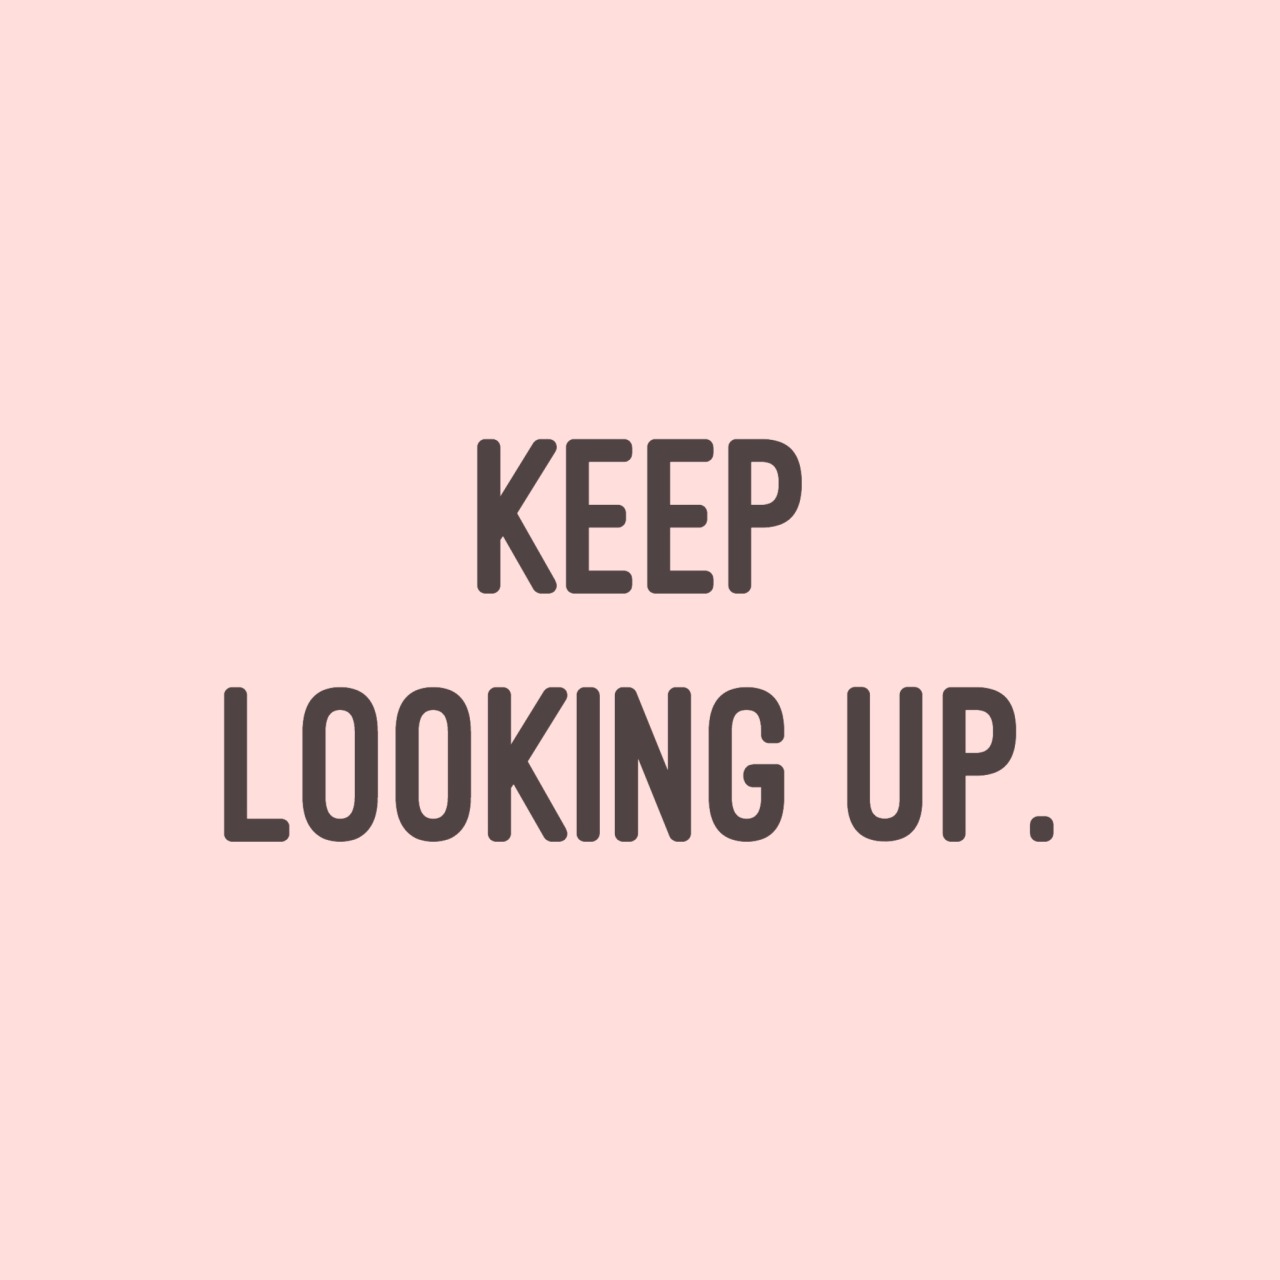 Keep look магазин. Keep looking. Keep looking for. Look me up.